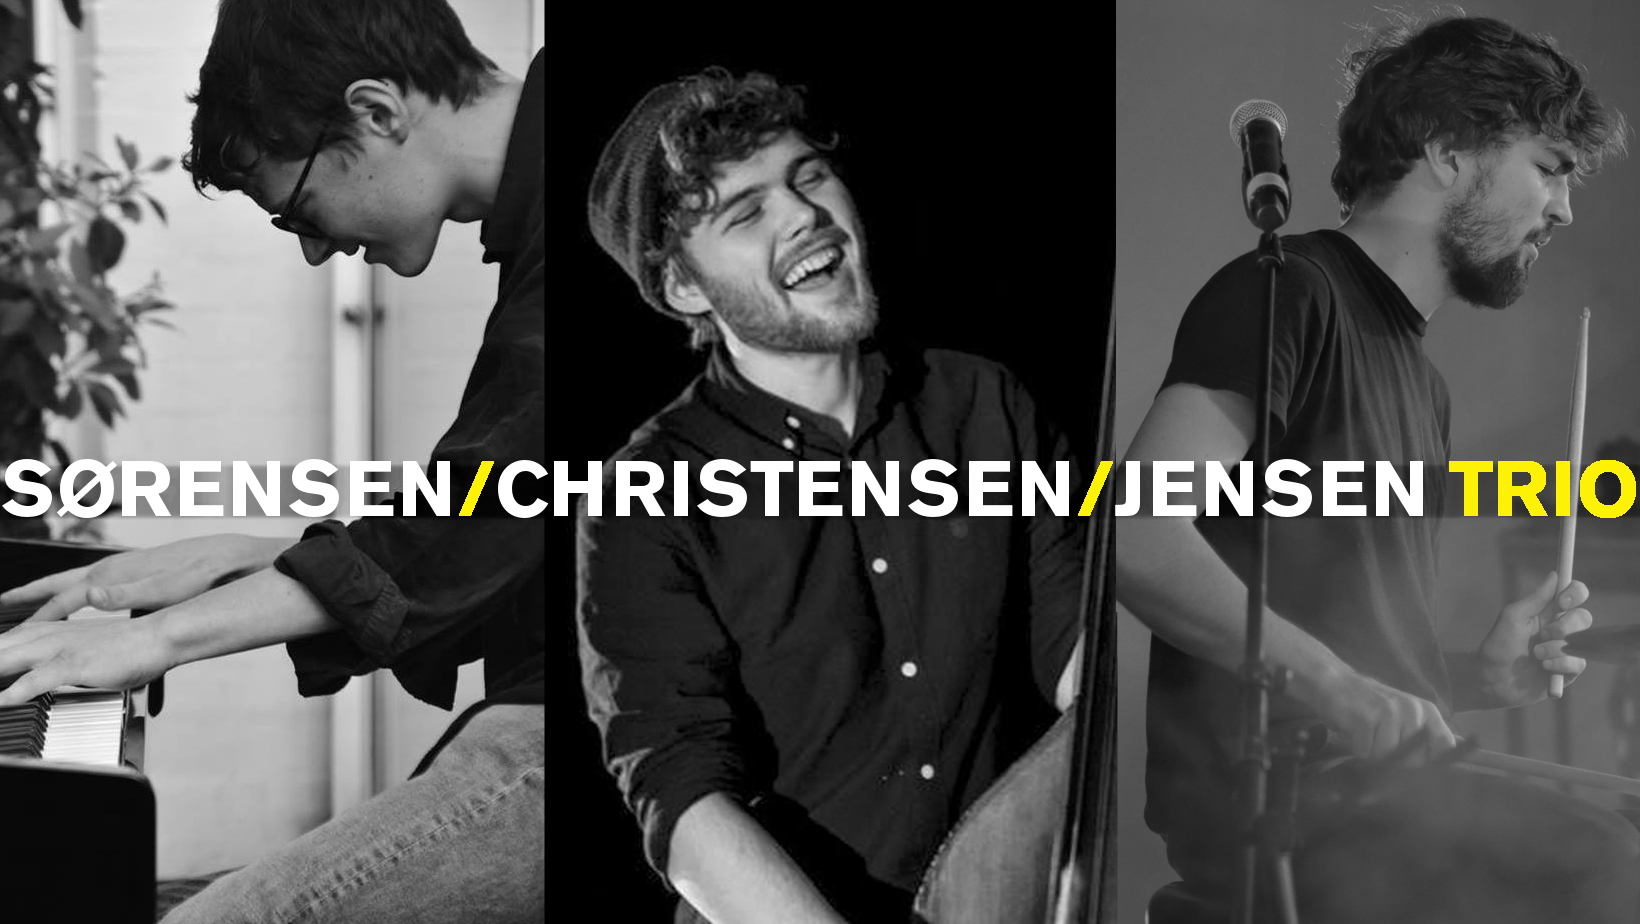 Sørensen / Christensen / Jensen Trio ((DK)) - Photo: 